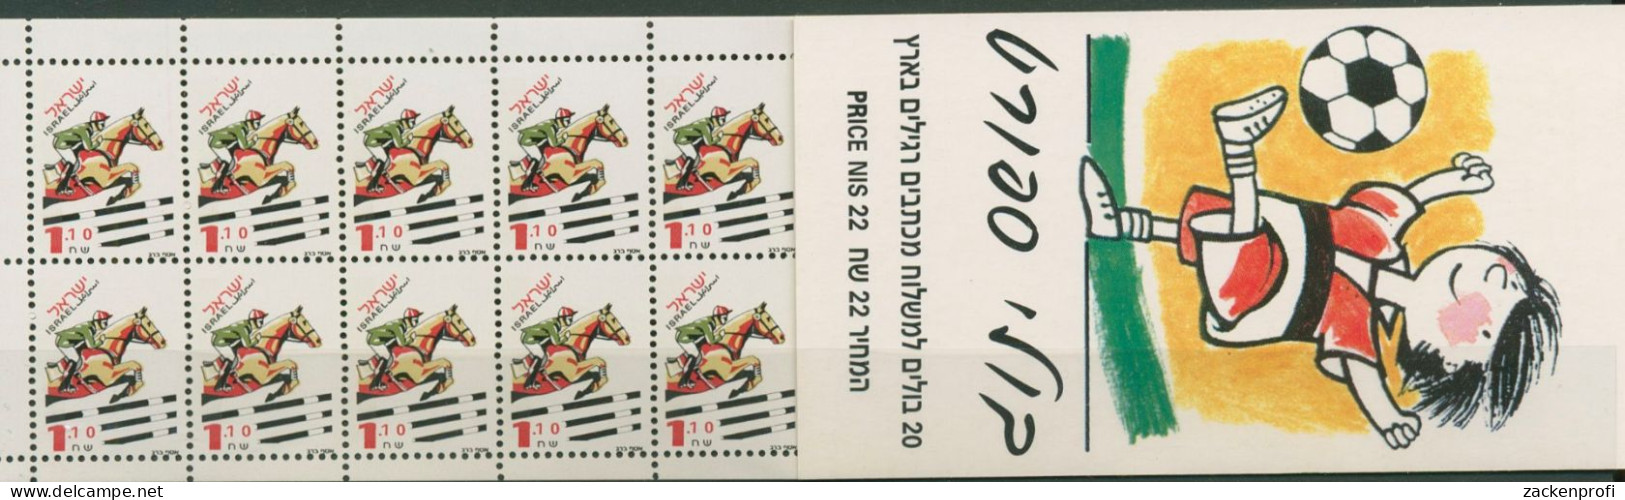 Israel 1997 Sport Springreiten Markenheftchen 1414 MH Postfrisch (C98318) - Markenheftchen